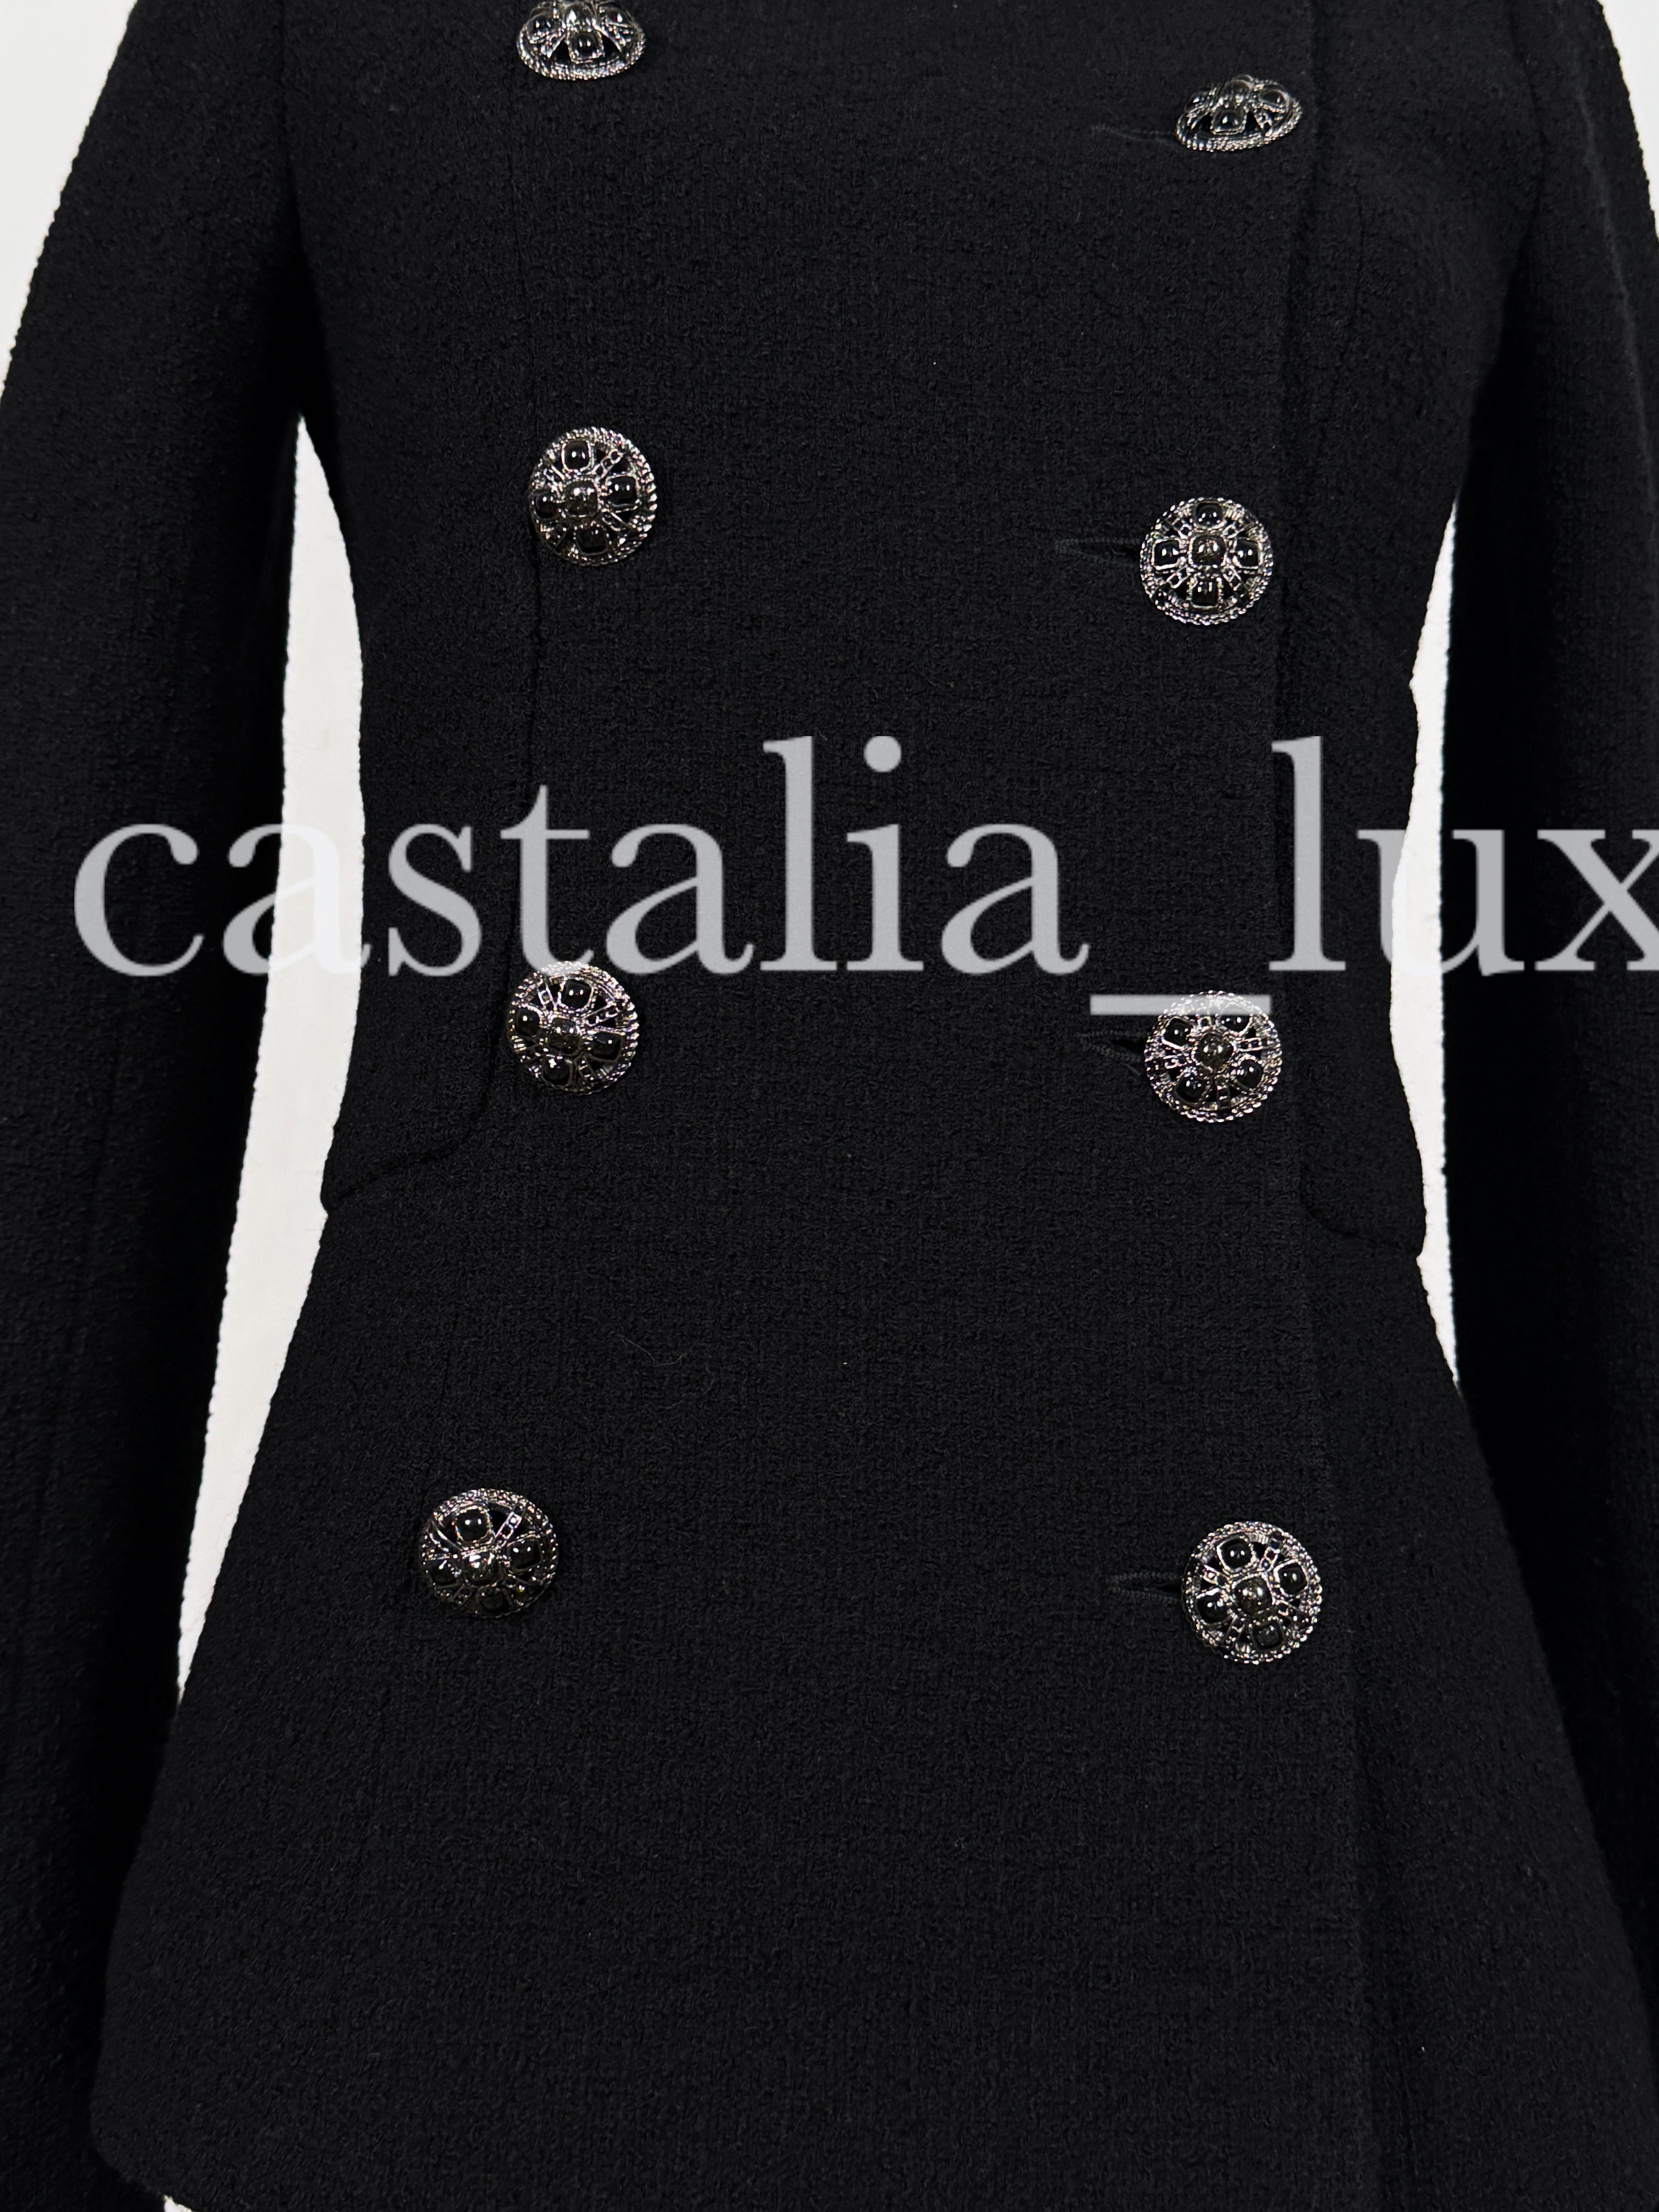 Chanel Iconic 9K$ Lady Gaga Style Black Tweed Jacket 9